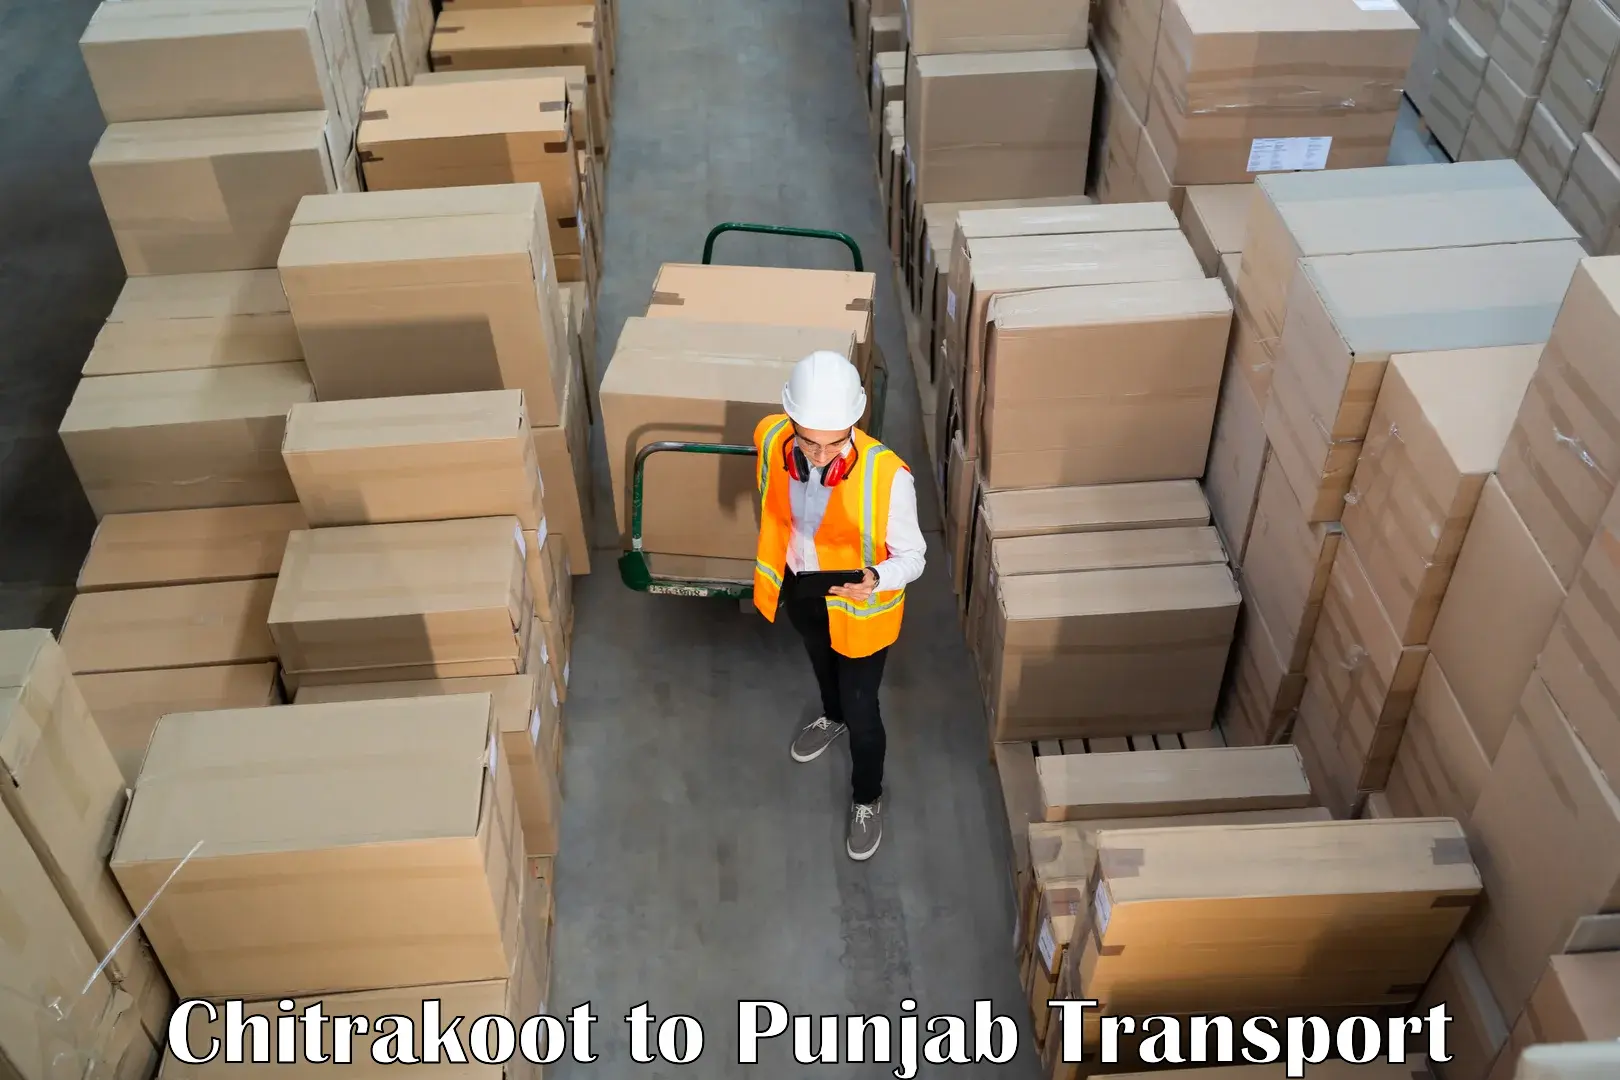 Road transport online services Chitrakoot to Rupnagar